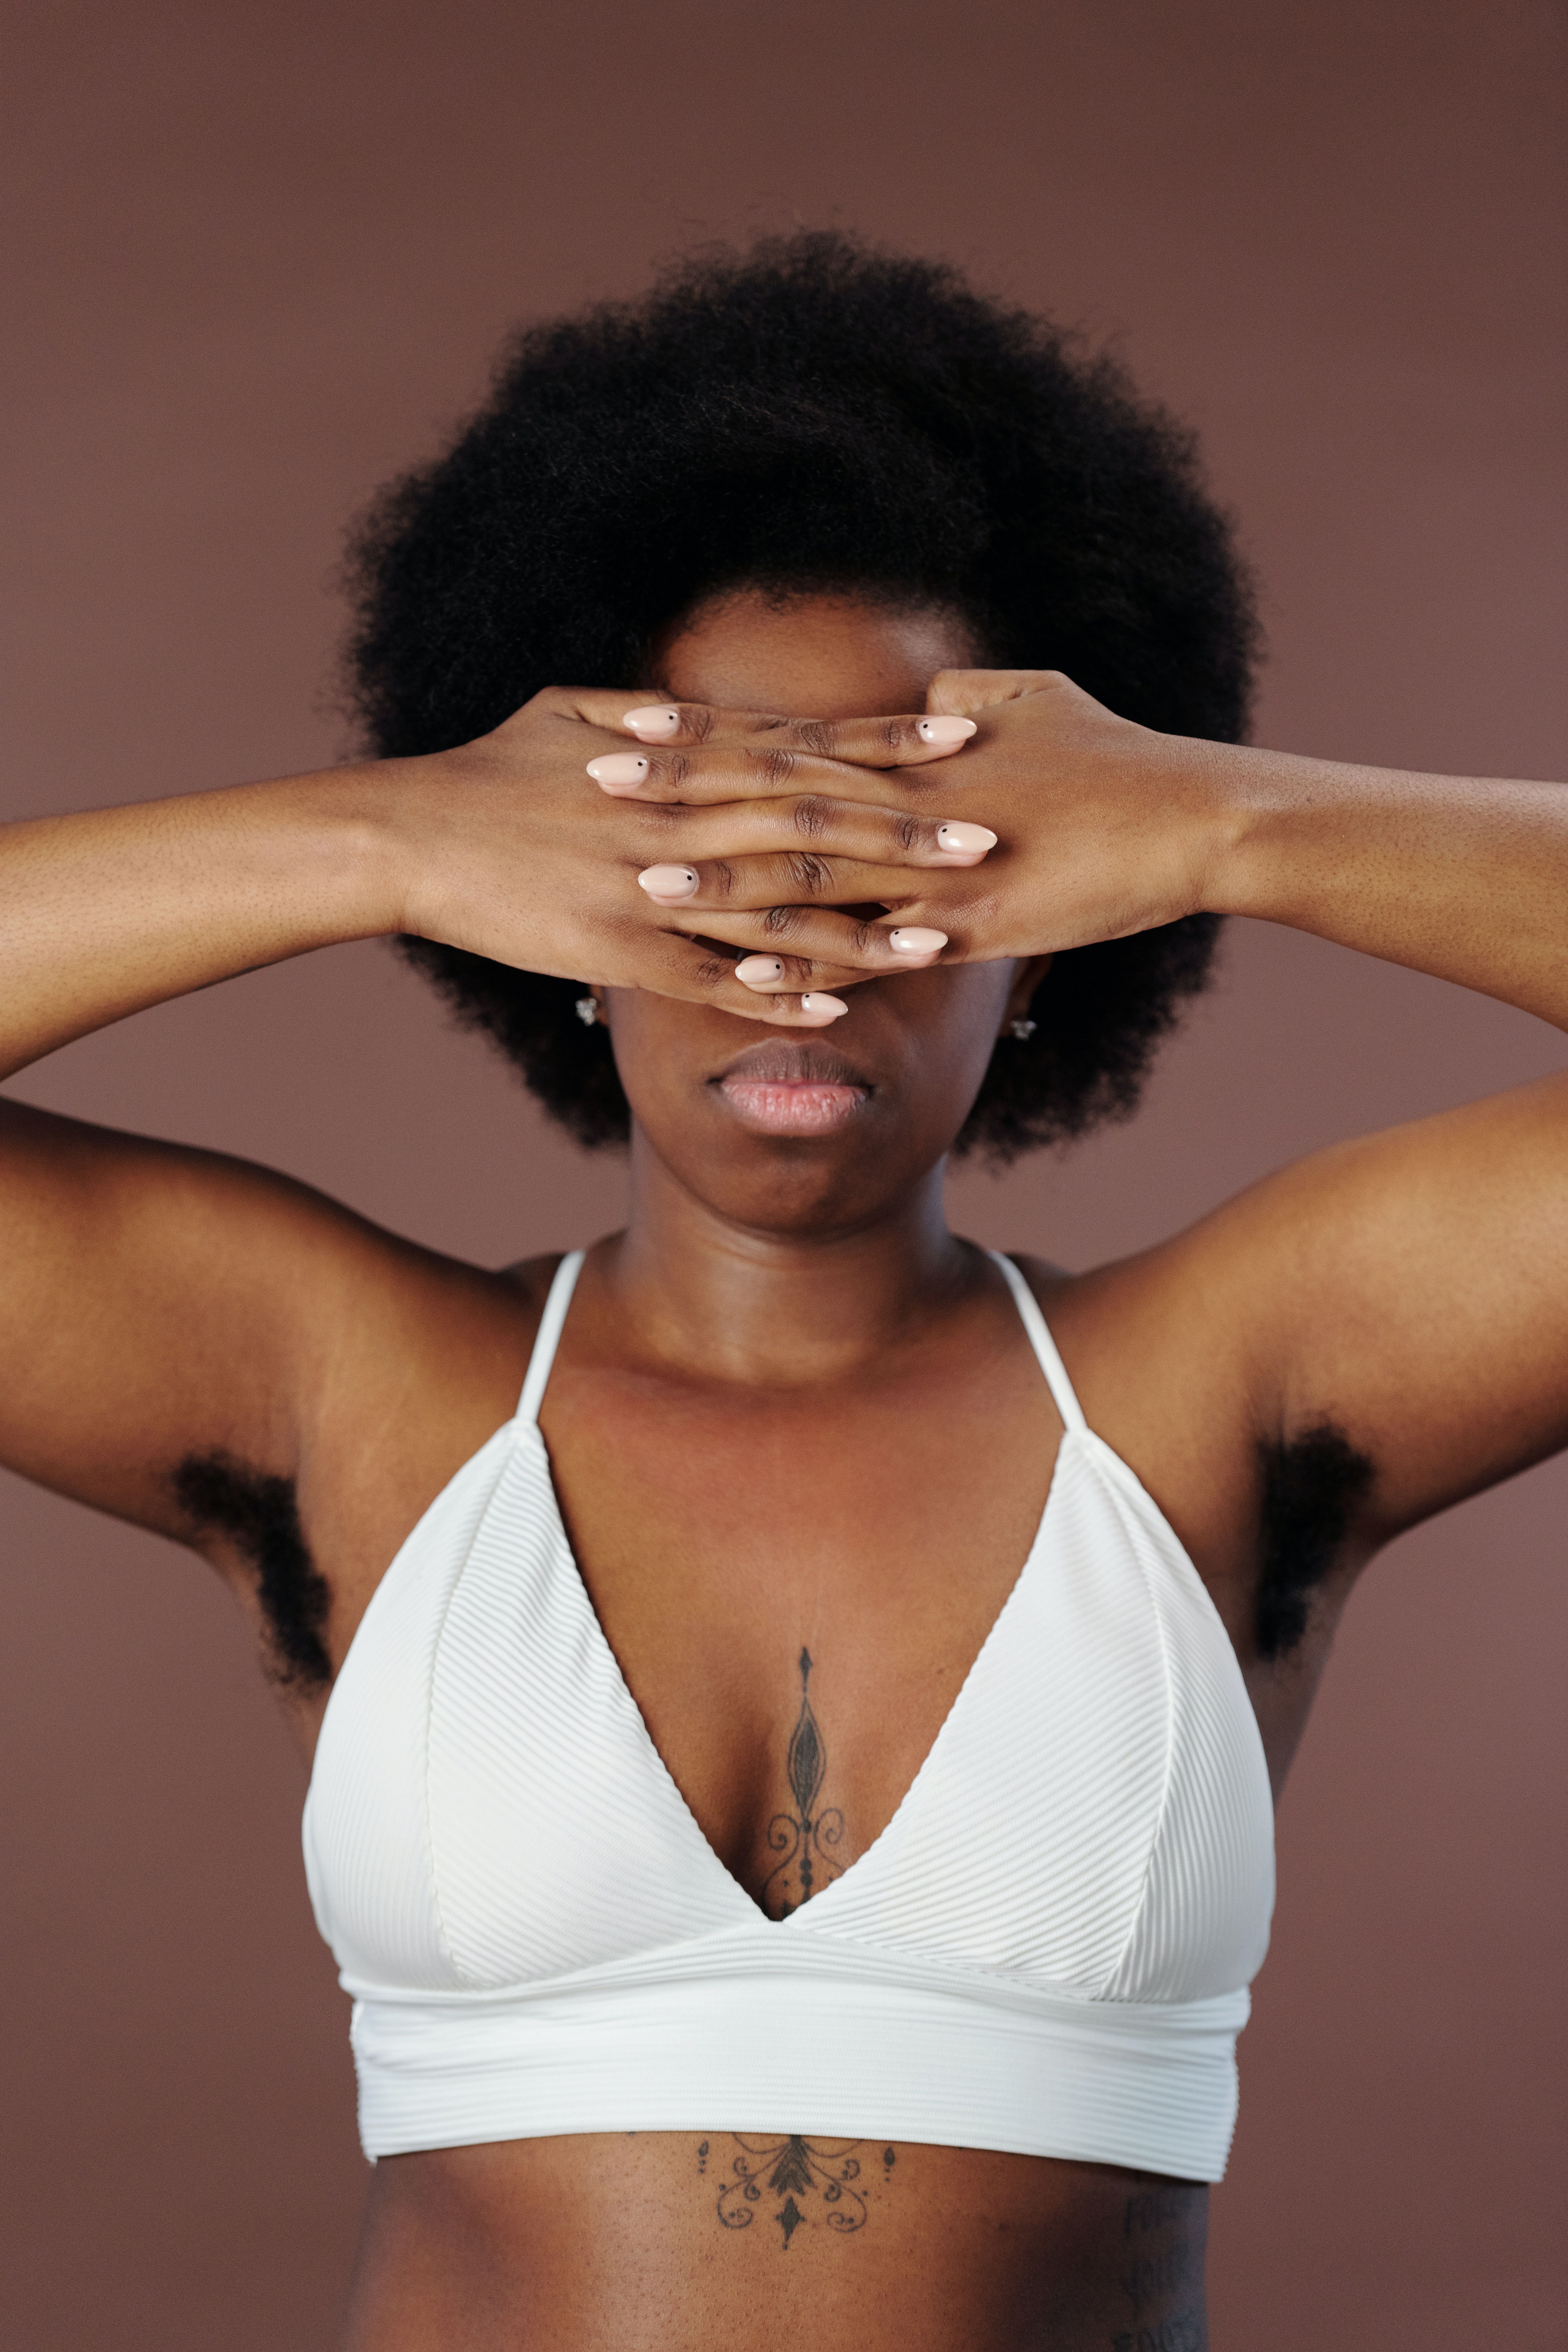 Une femme noire avec un crop blanc et un tatouage inter-seins se cache les yeux avec les mains et laisse entrevoir des aisselles poilues.